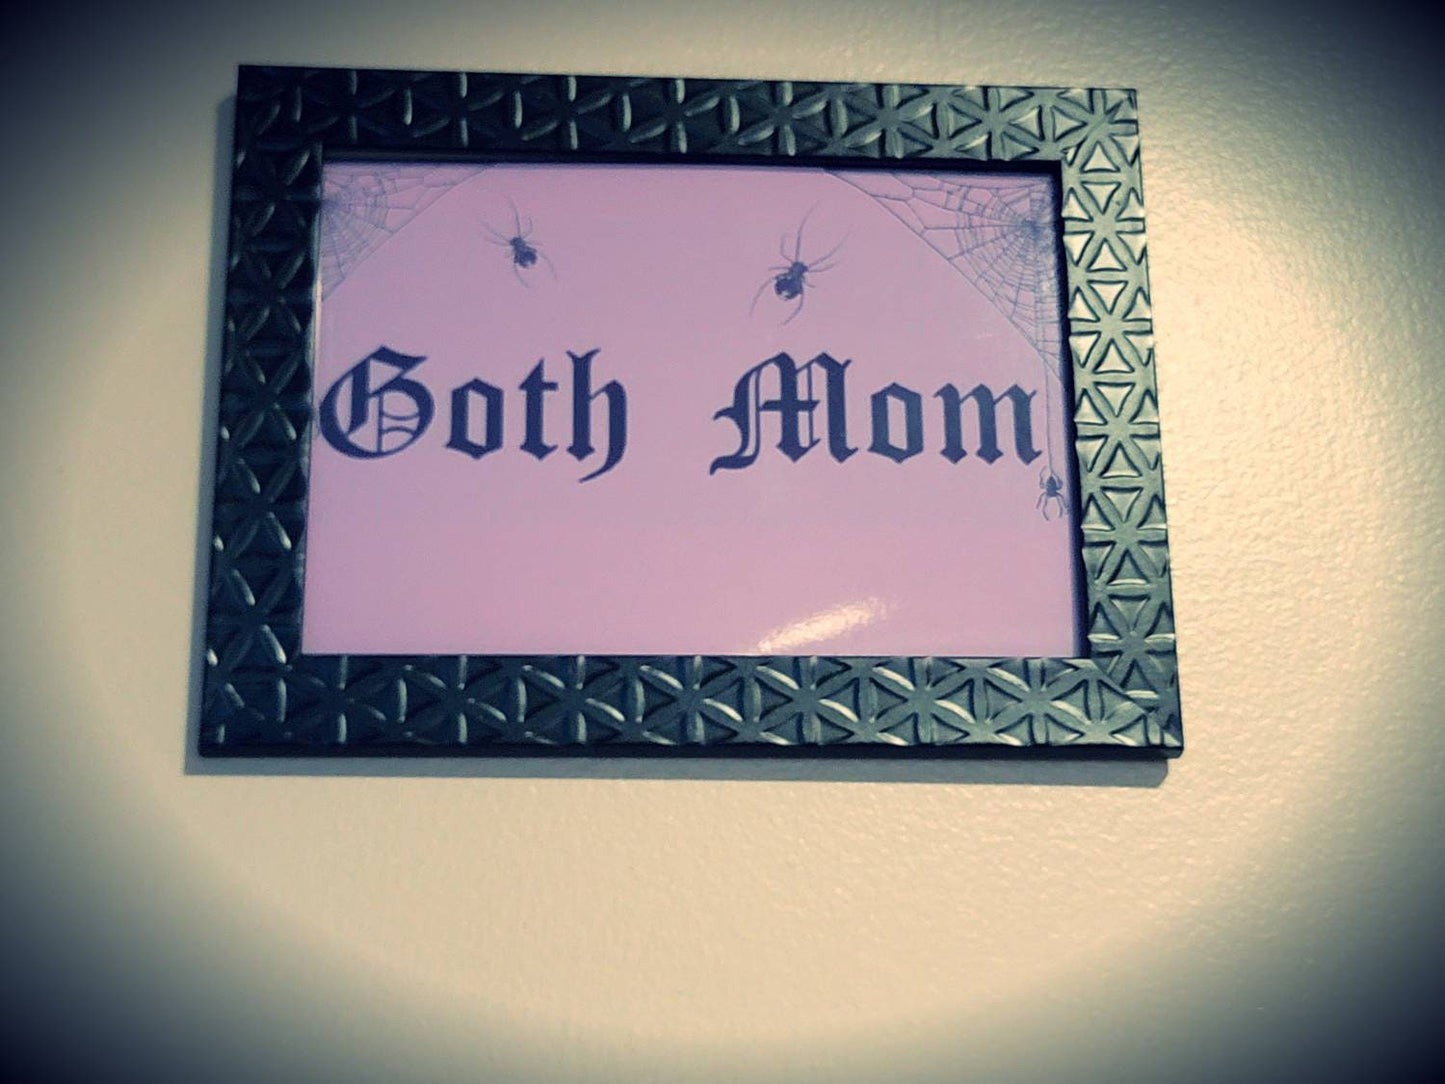 Goth mom wall decor